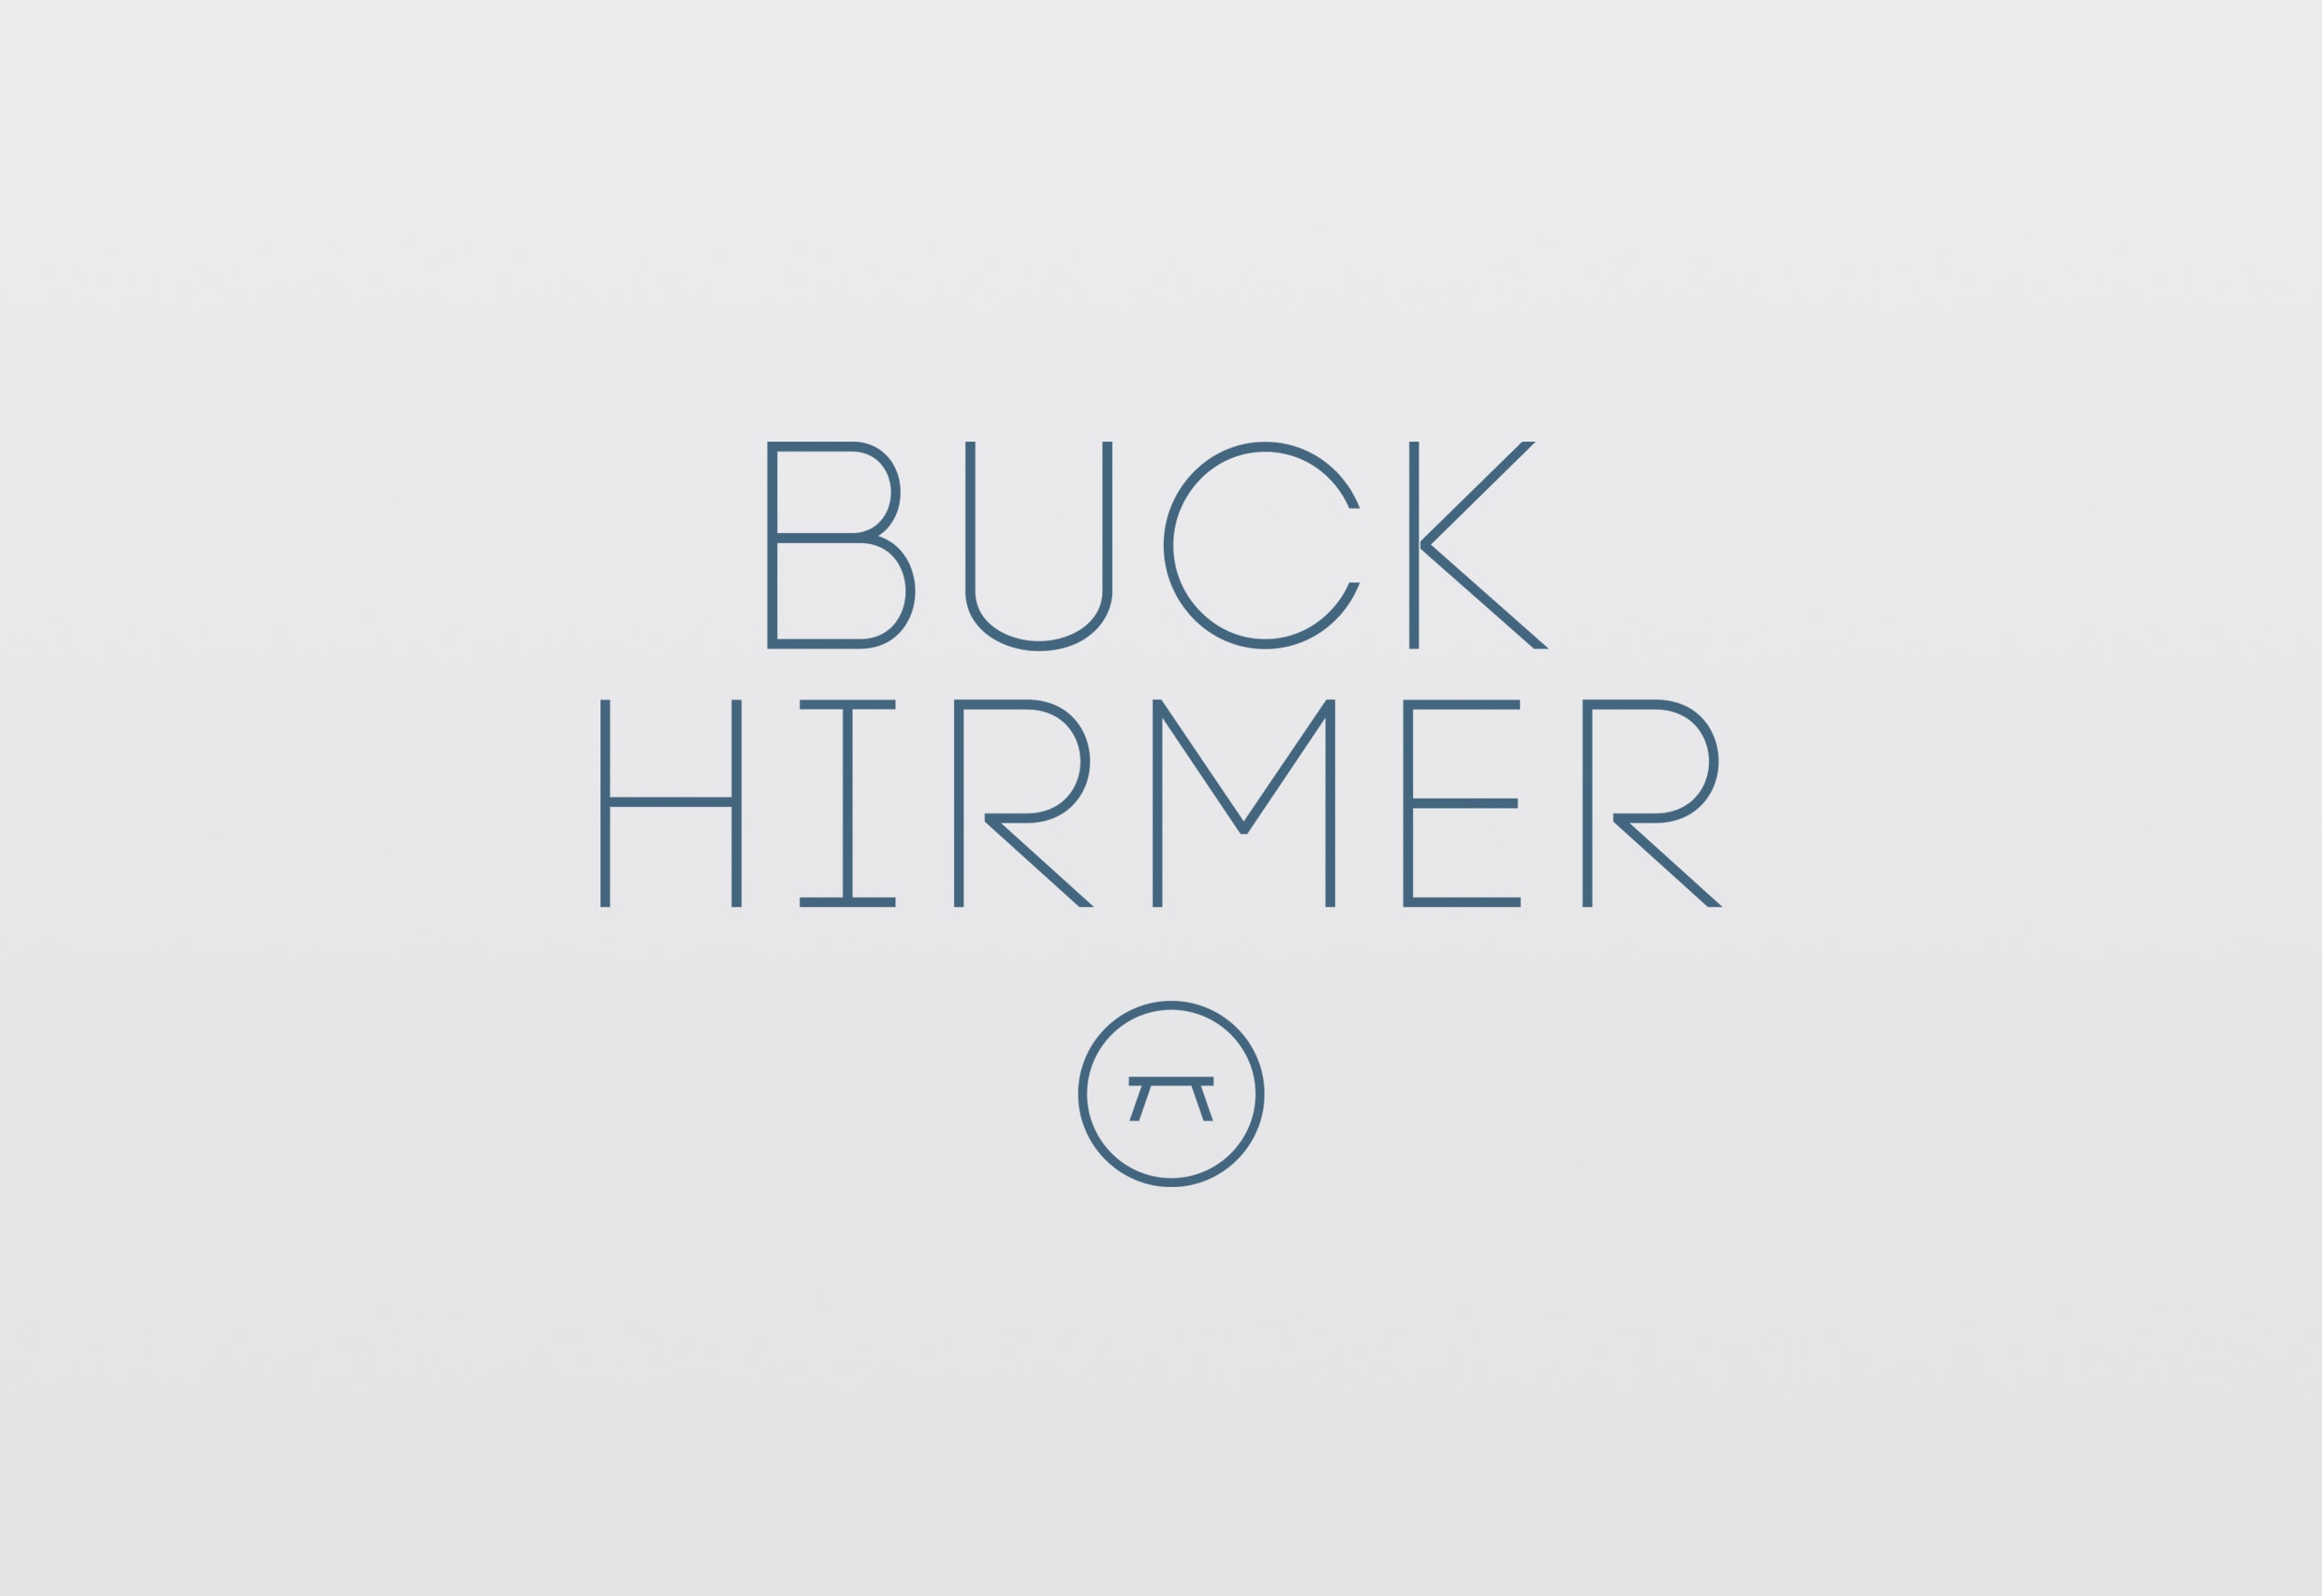 Design Buck Hirmer